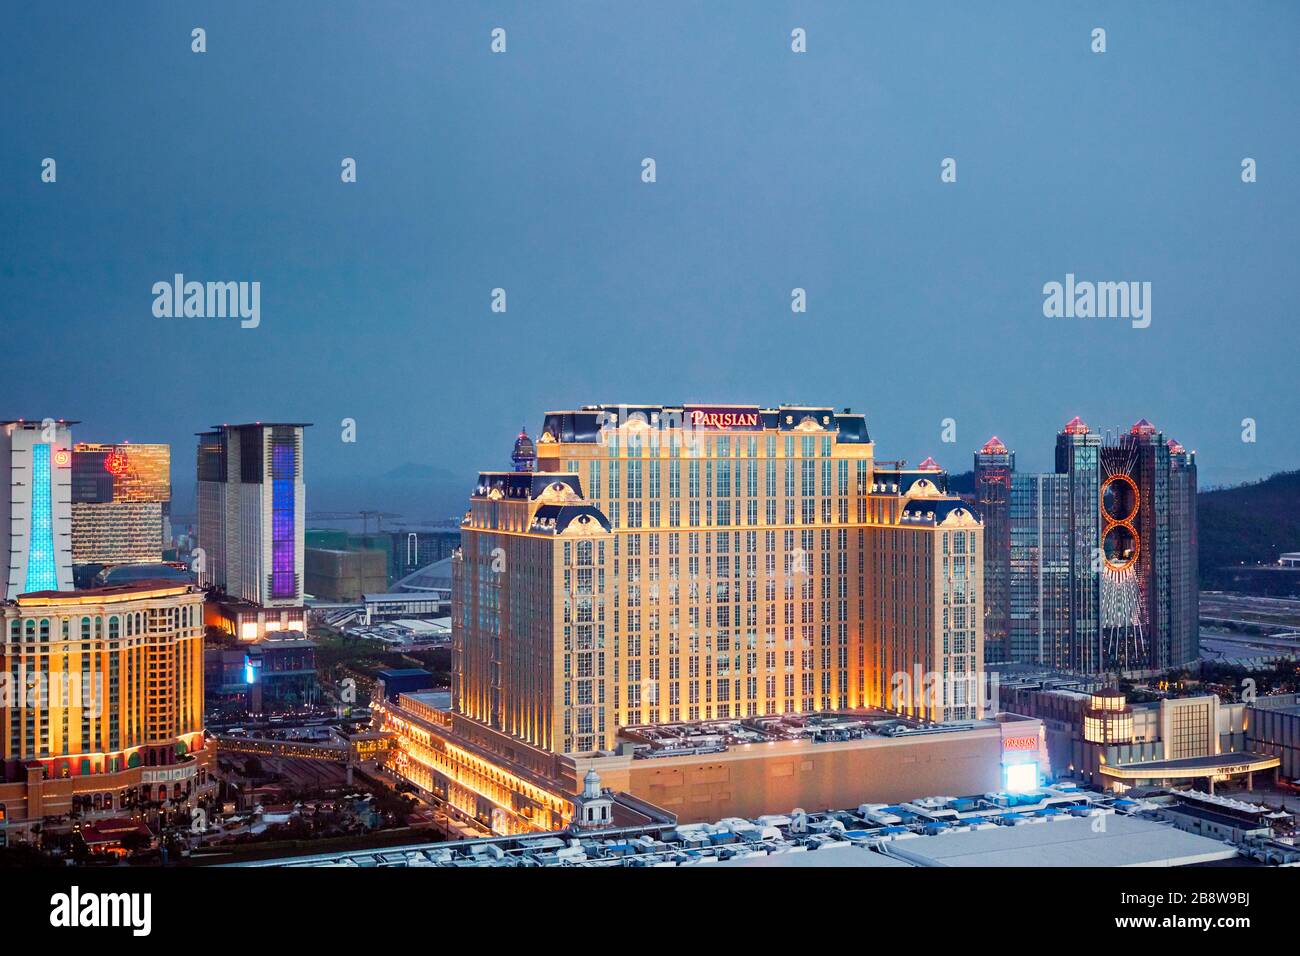 Luftbild des Pariser Macao Hotels und der umliegenden Gebäude, nachts beleuchtet. Cotai, Macau, China. Stockfoto